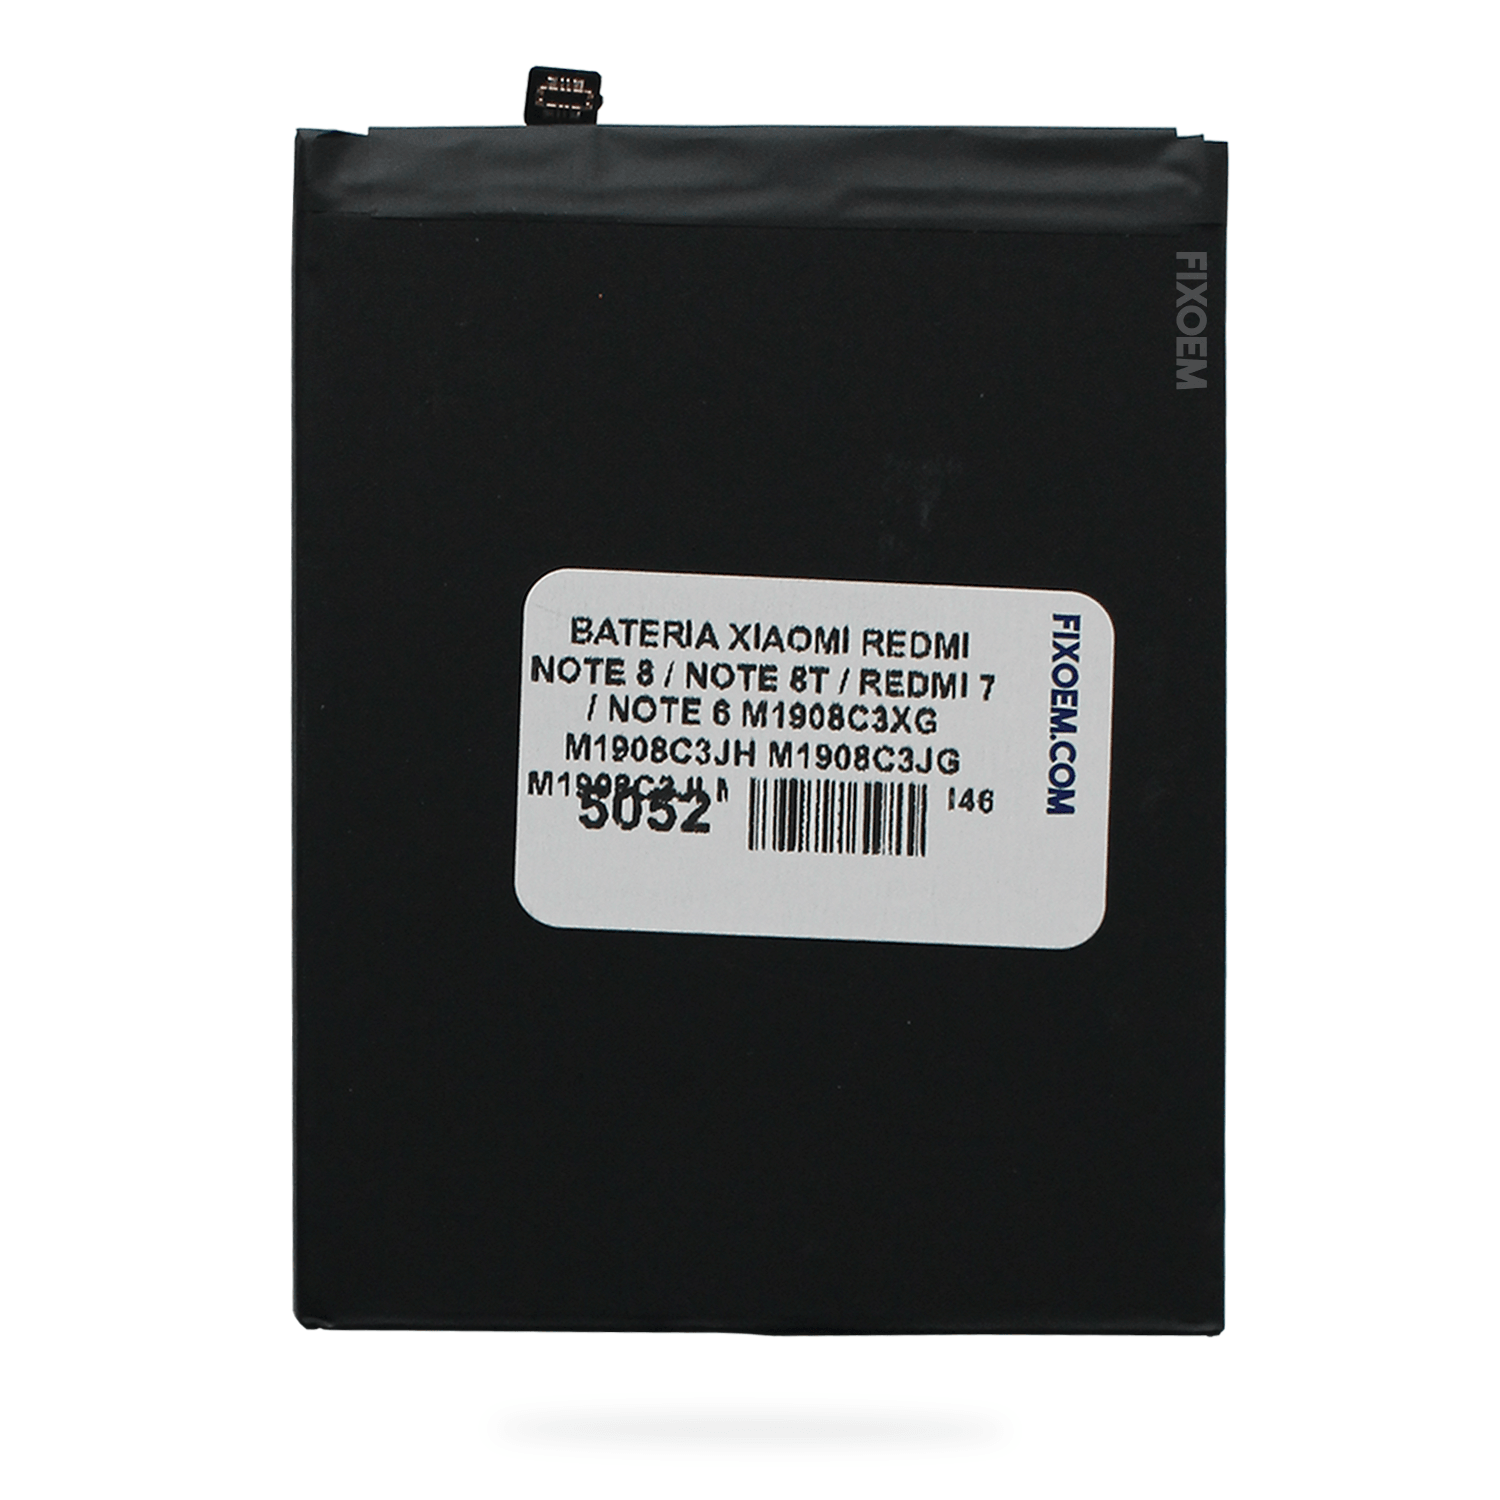 Bateria Xiaomi Redmi Note 8 / Note 8T / Redmi 7 / Note 6 Bn46 M1908C3XG M1908C3JH M1908C3JG M1908C3JI M1810F6LG |+2,000 reseñas 4.8/5 ⭐